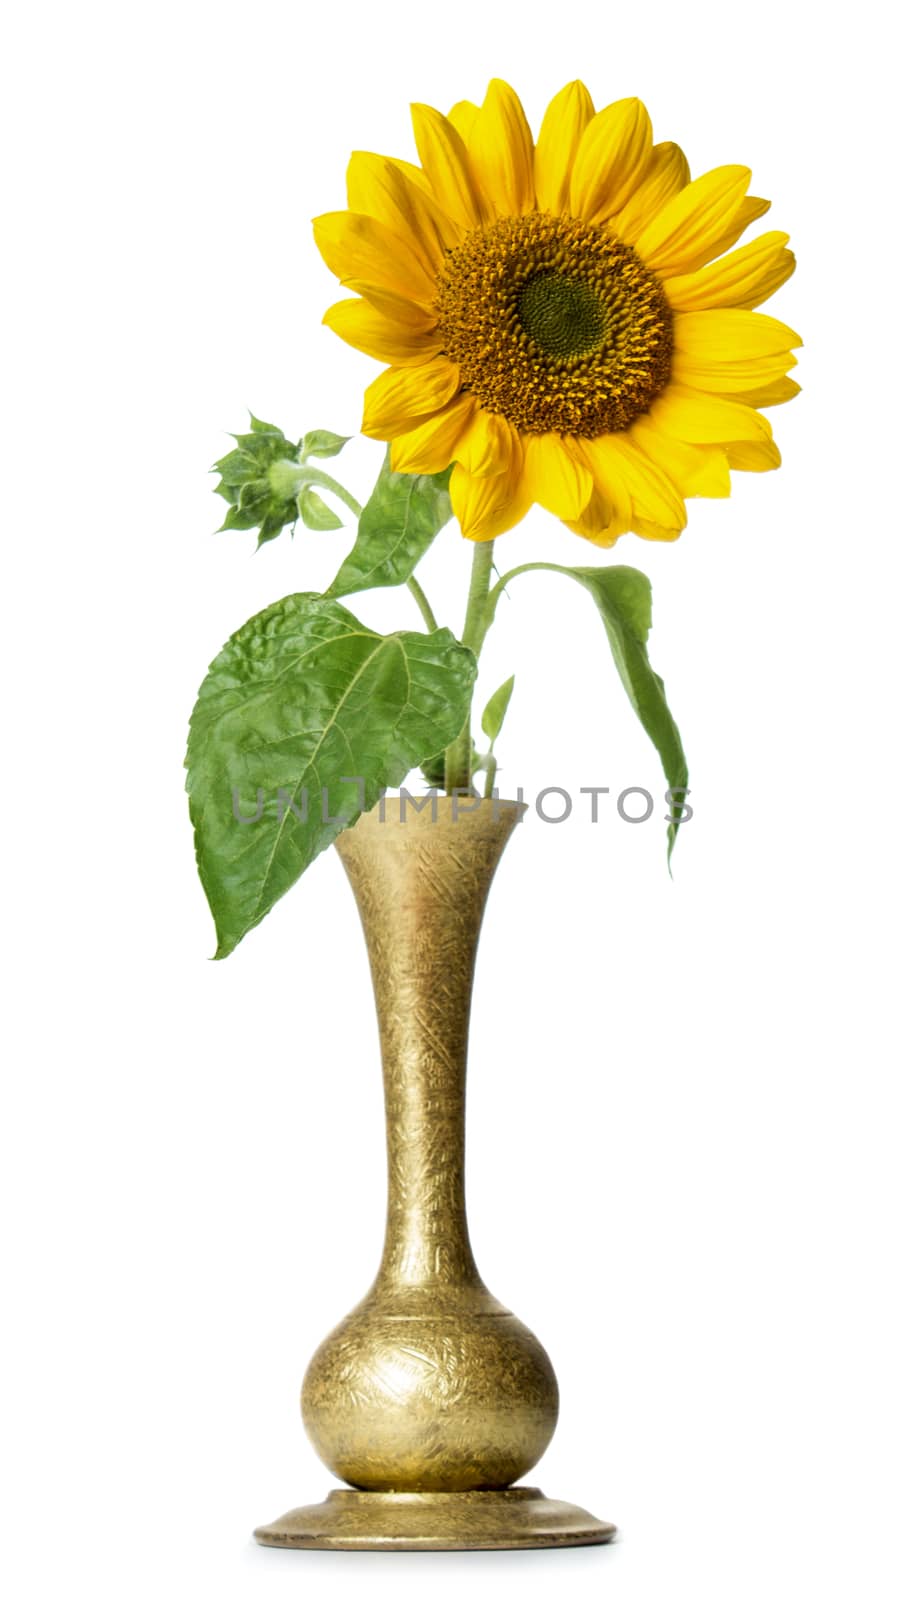 Sunflower in vase by Valengilda